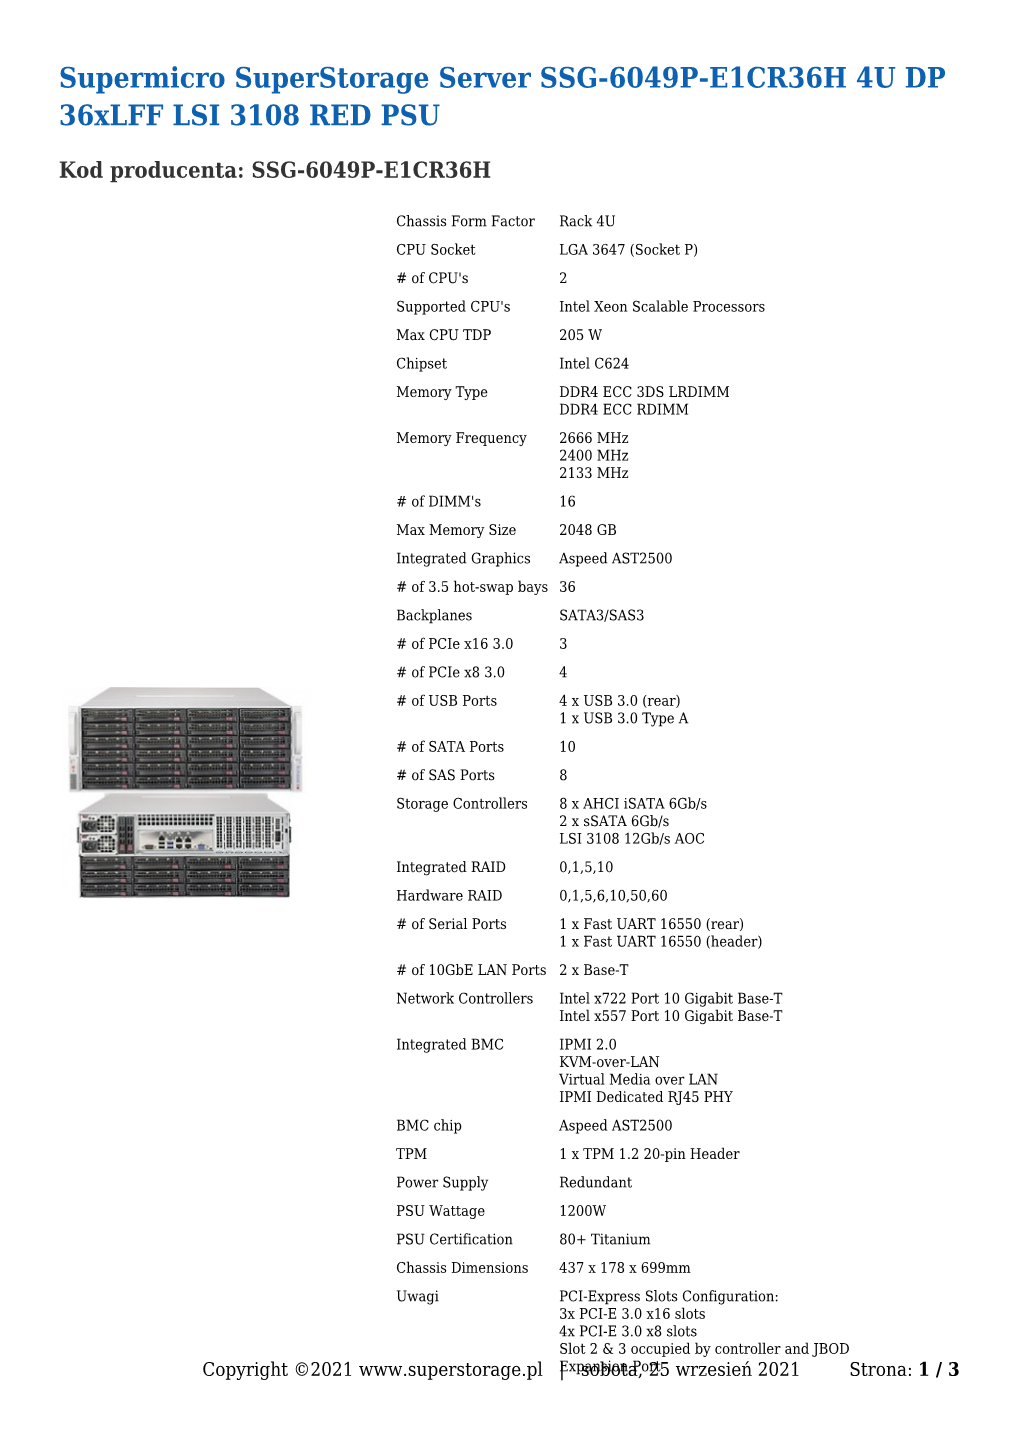 Supermicro Superstorage Server SSG-6049P-E1CR36H 4U DP 36Xlff LSI 3108 RED PSU